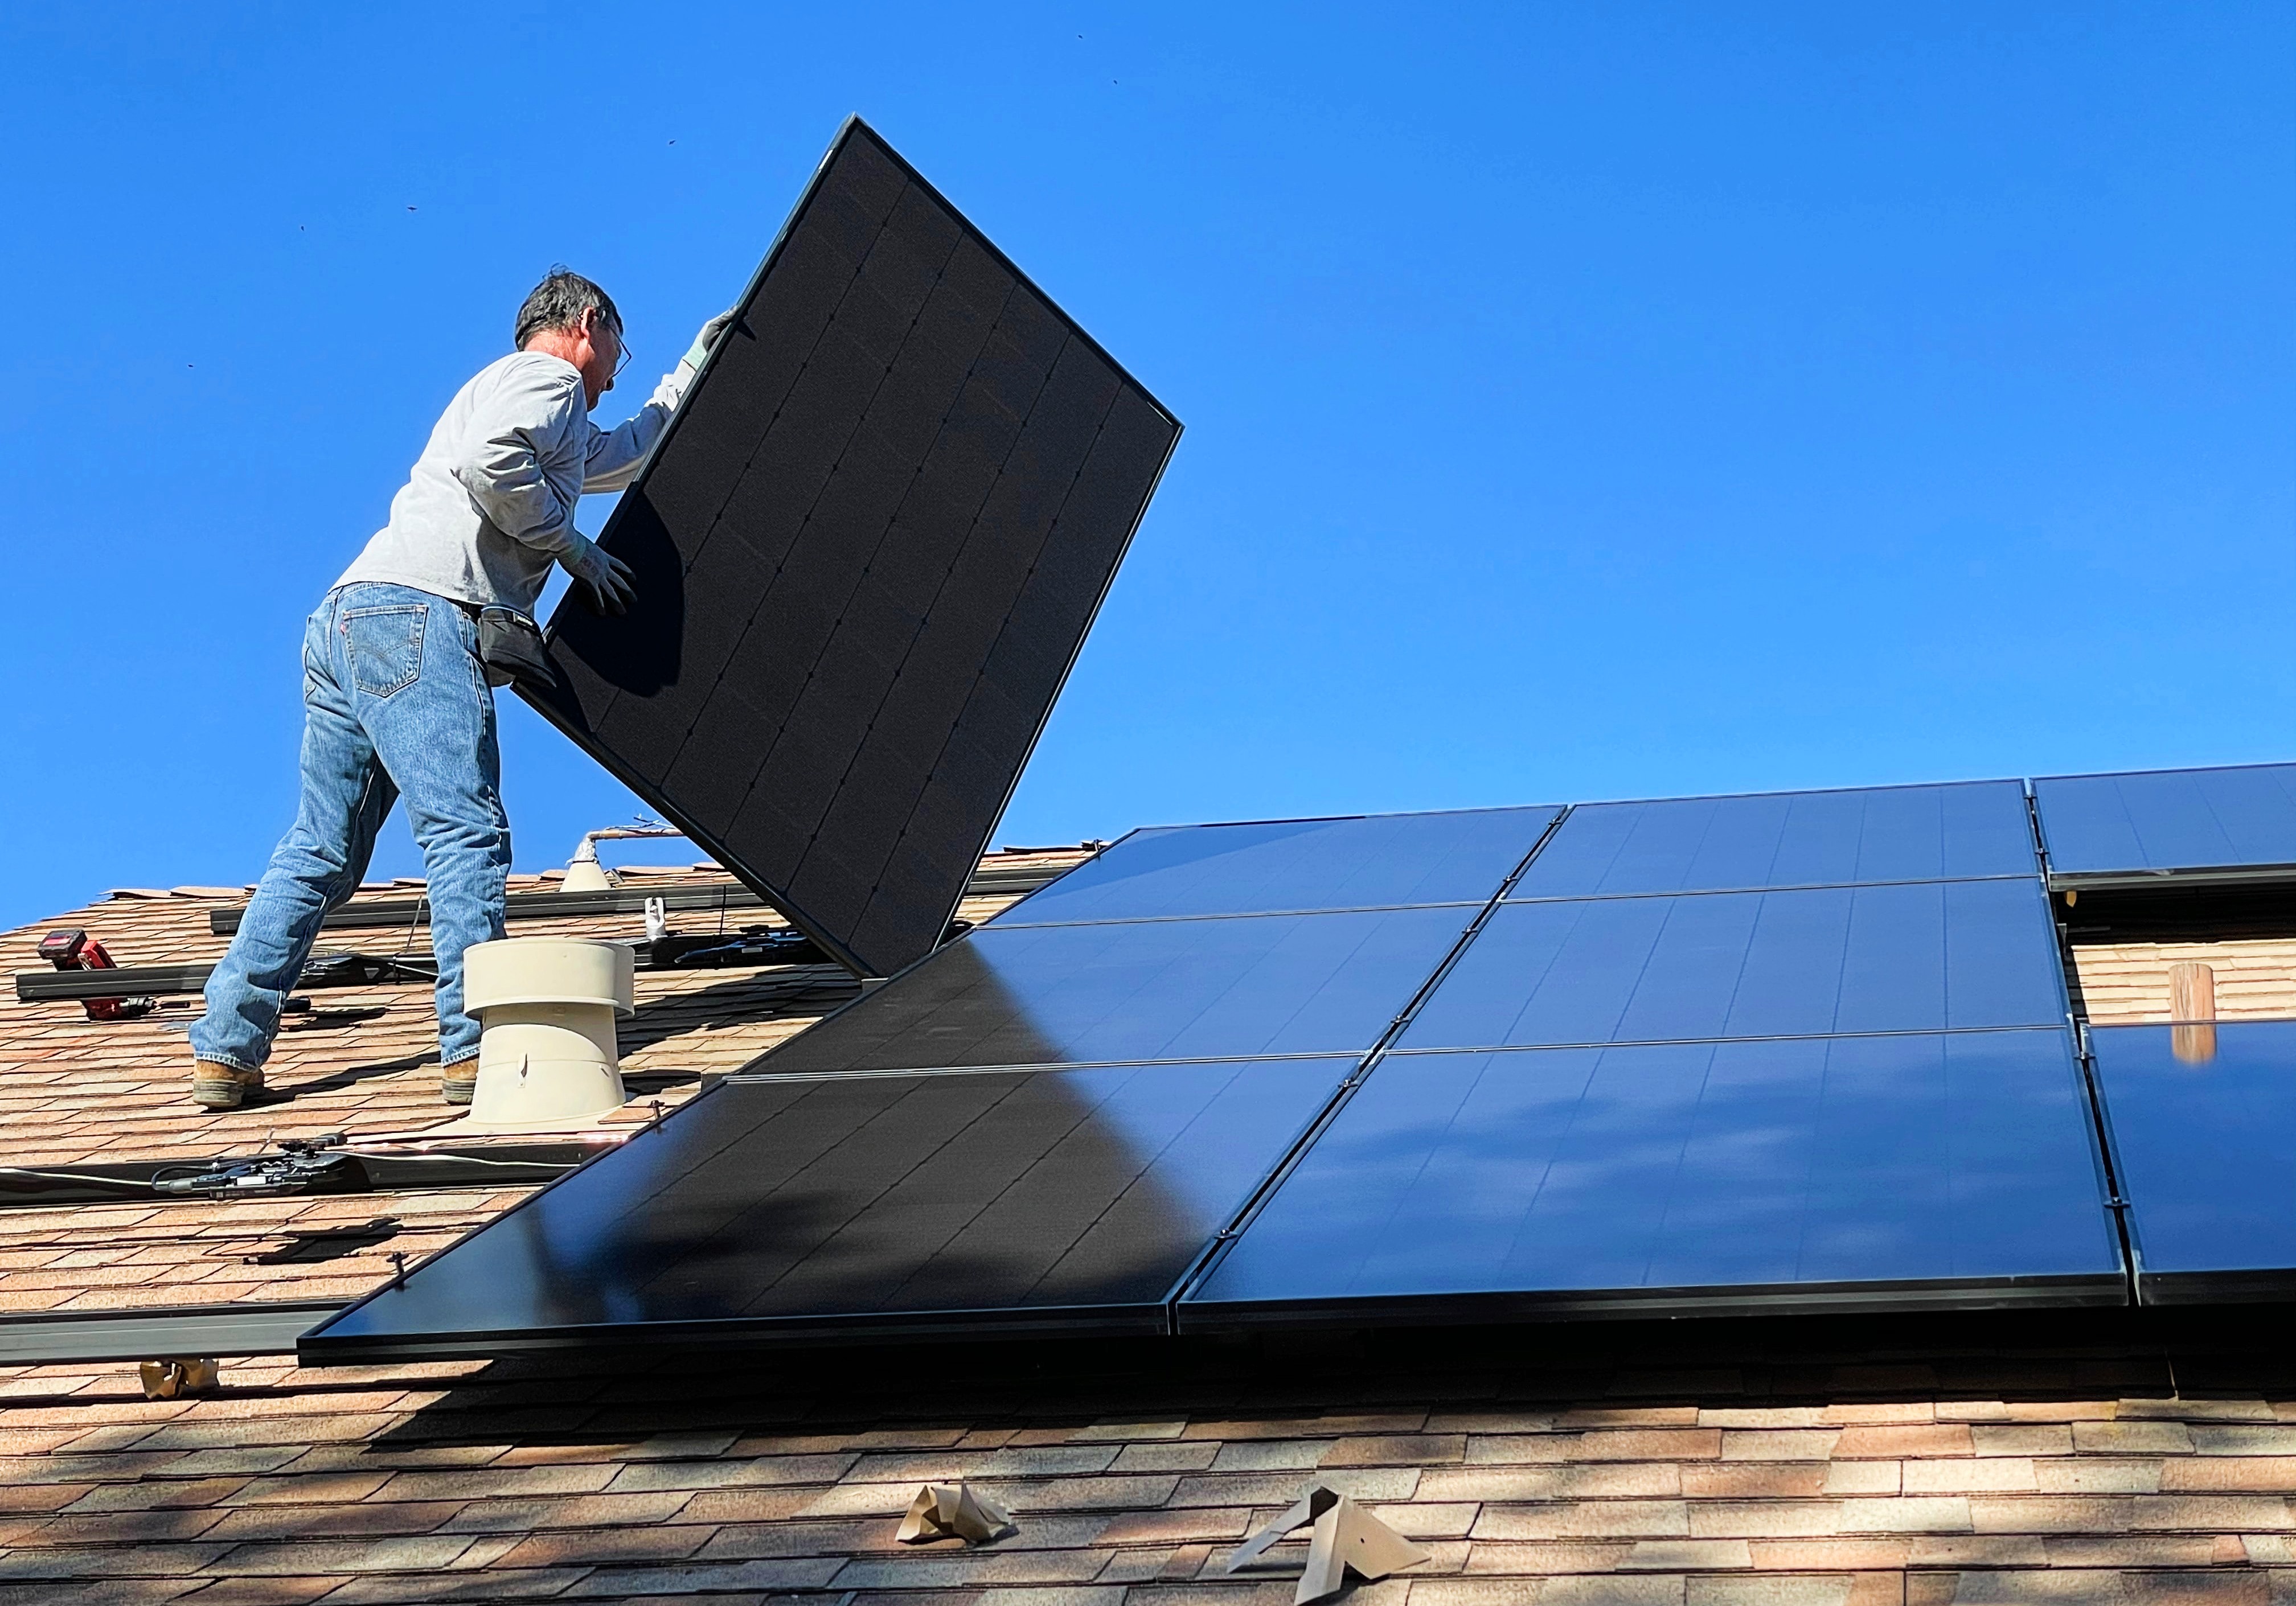 Les trois quarts des maisons pourront être autosuffisantes grâce à des panneaux solaires d’ici 2050